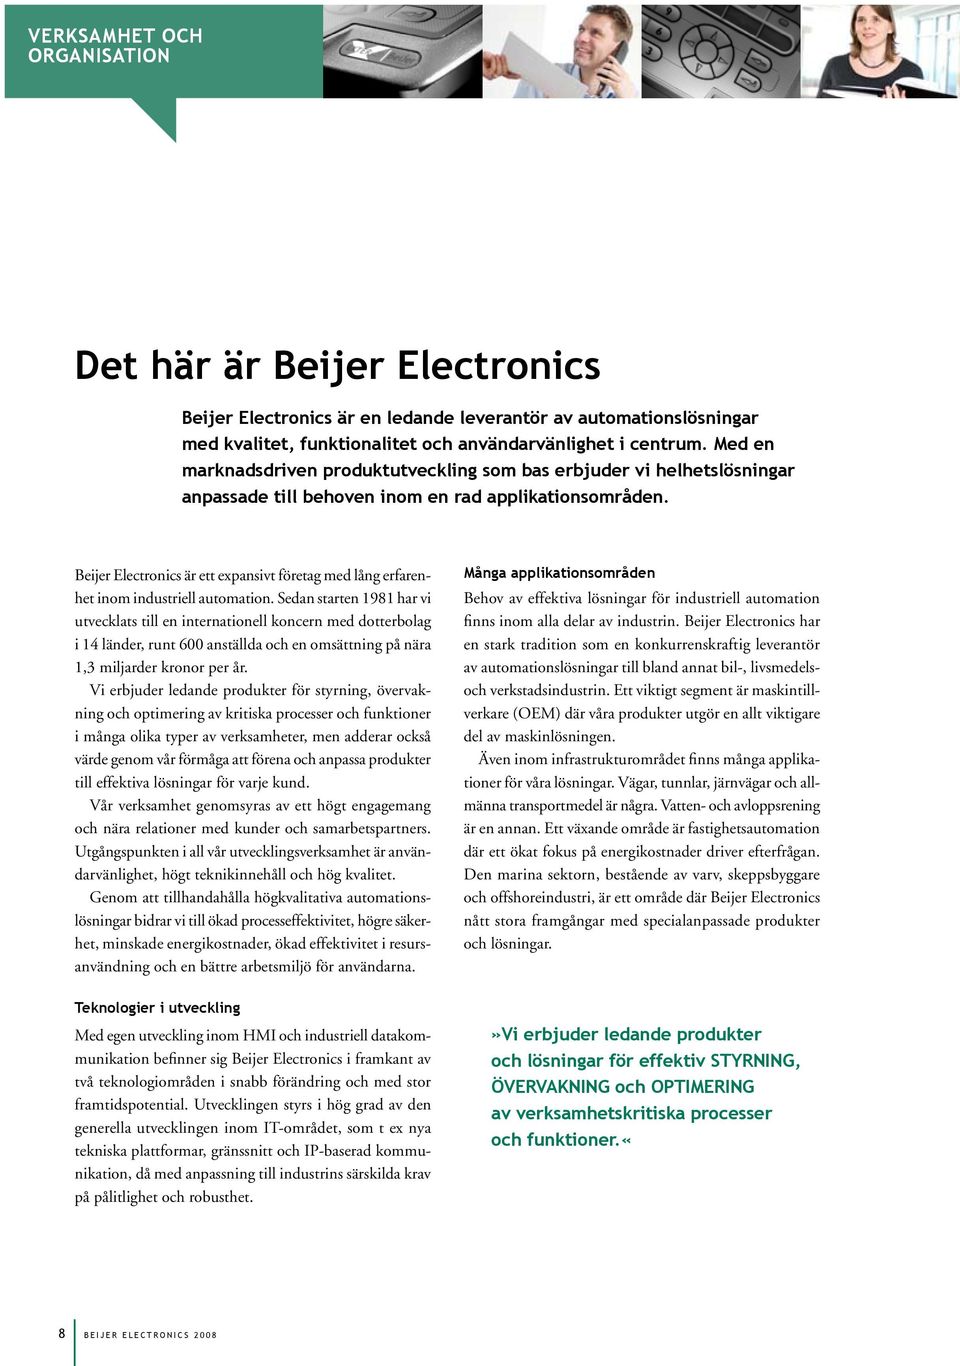 Beijer Electronics är ett expansivt företag med lång erfarenhet inom industriell automation.